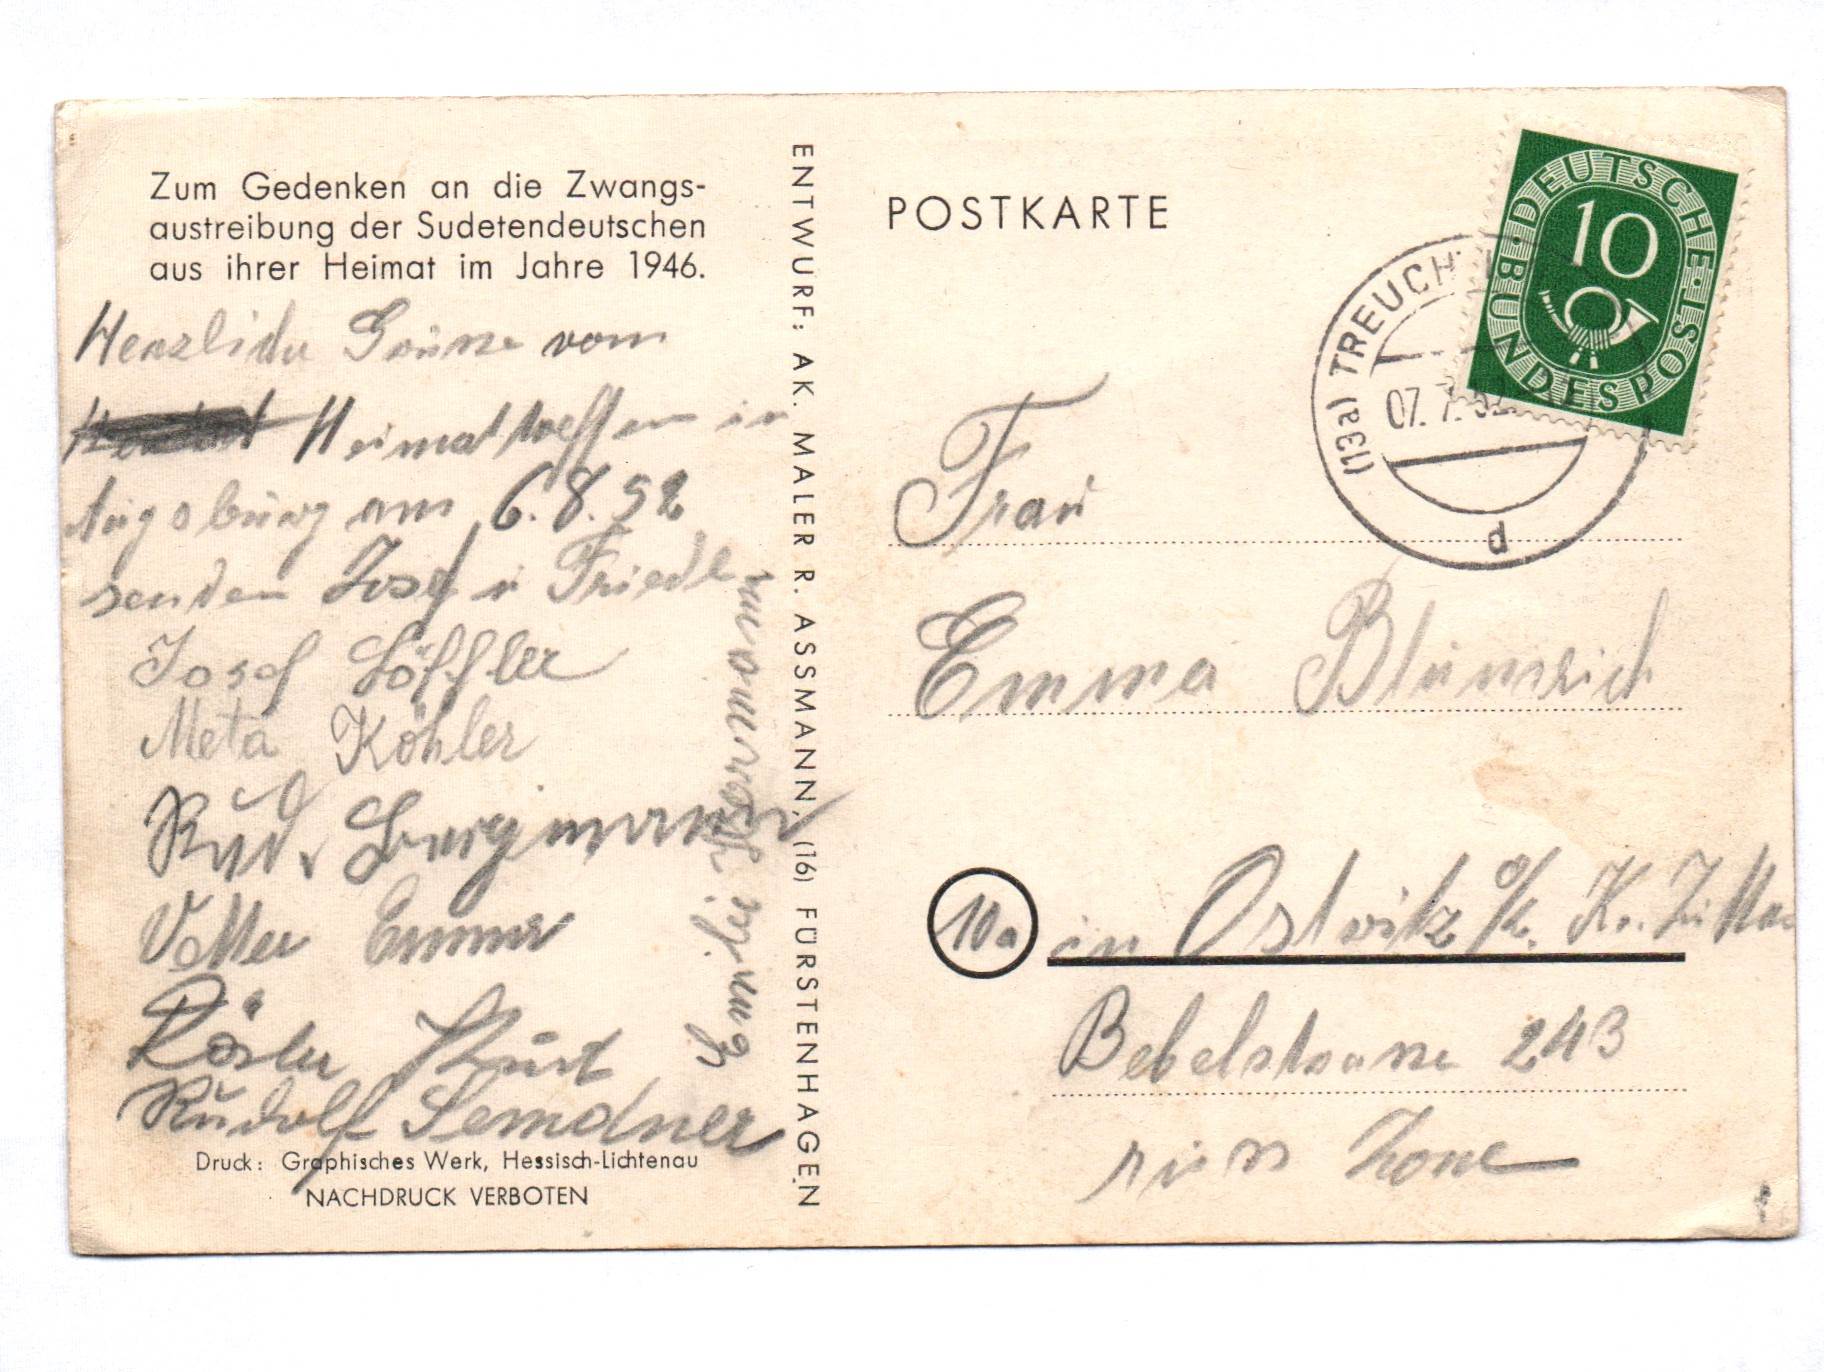 Ak Zum Gedenken an die Zwangsaustreibung der Sudetendeutschen 1946 Postkarte 1952